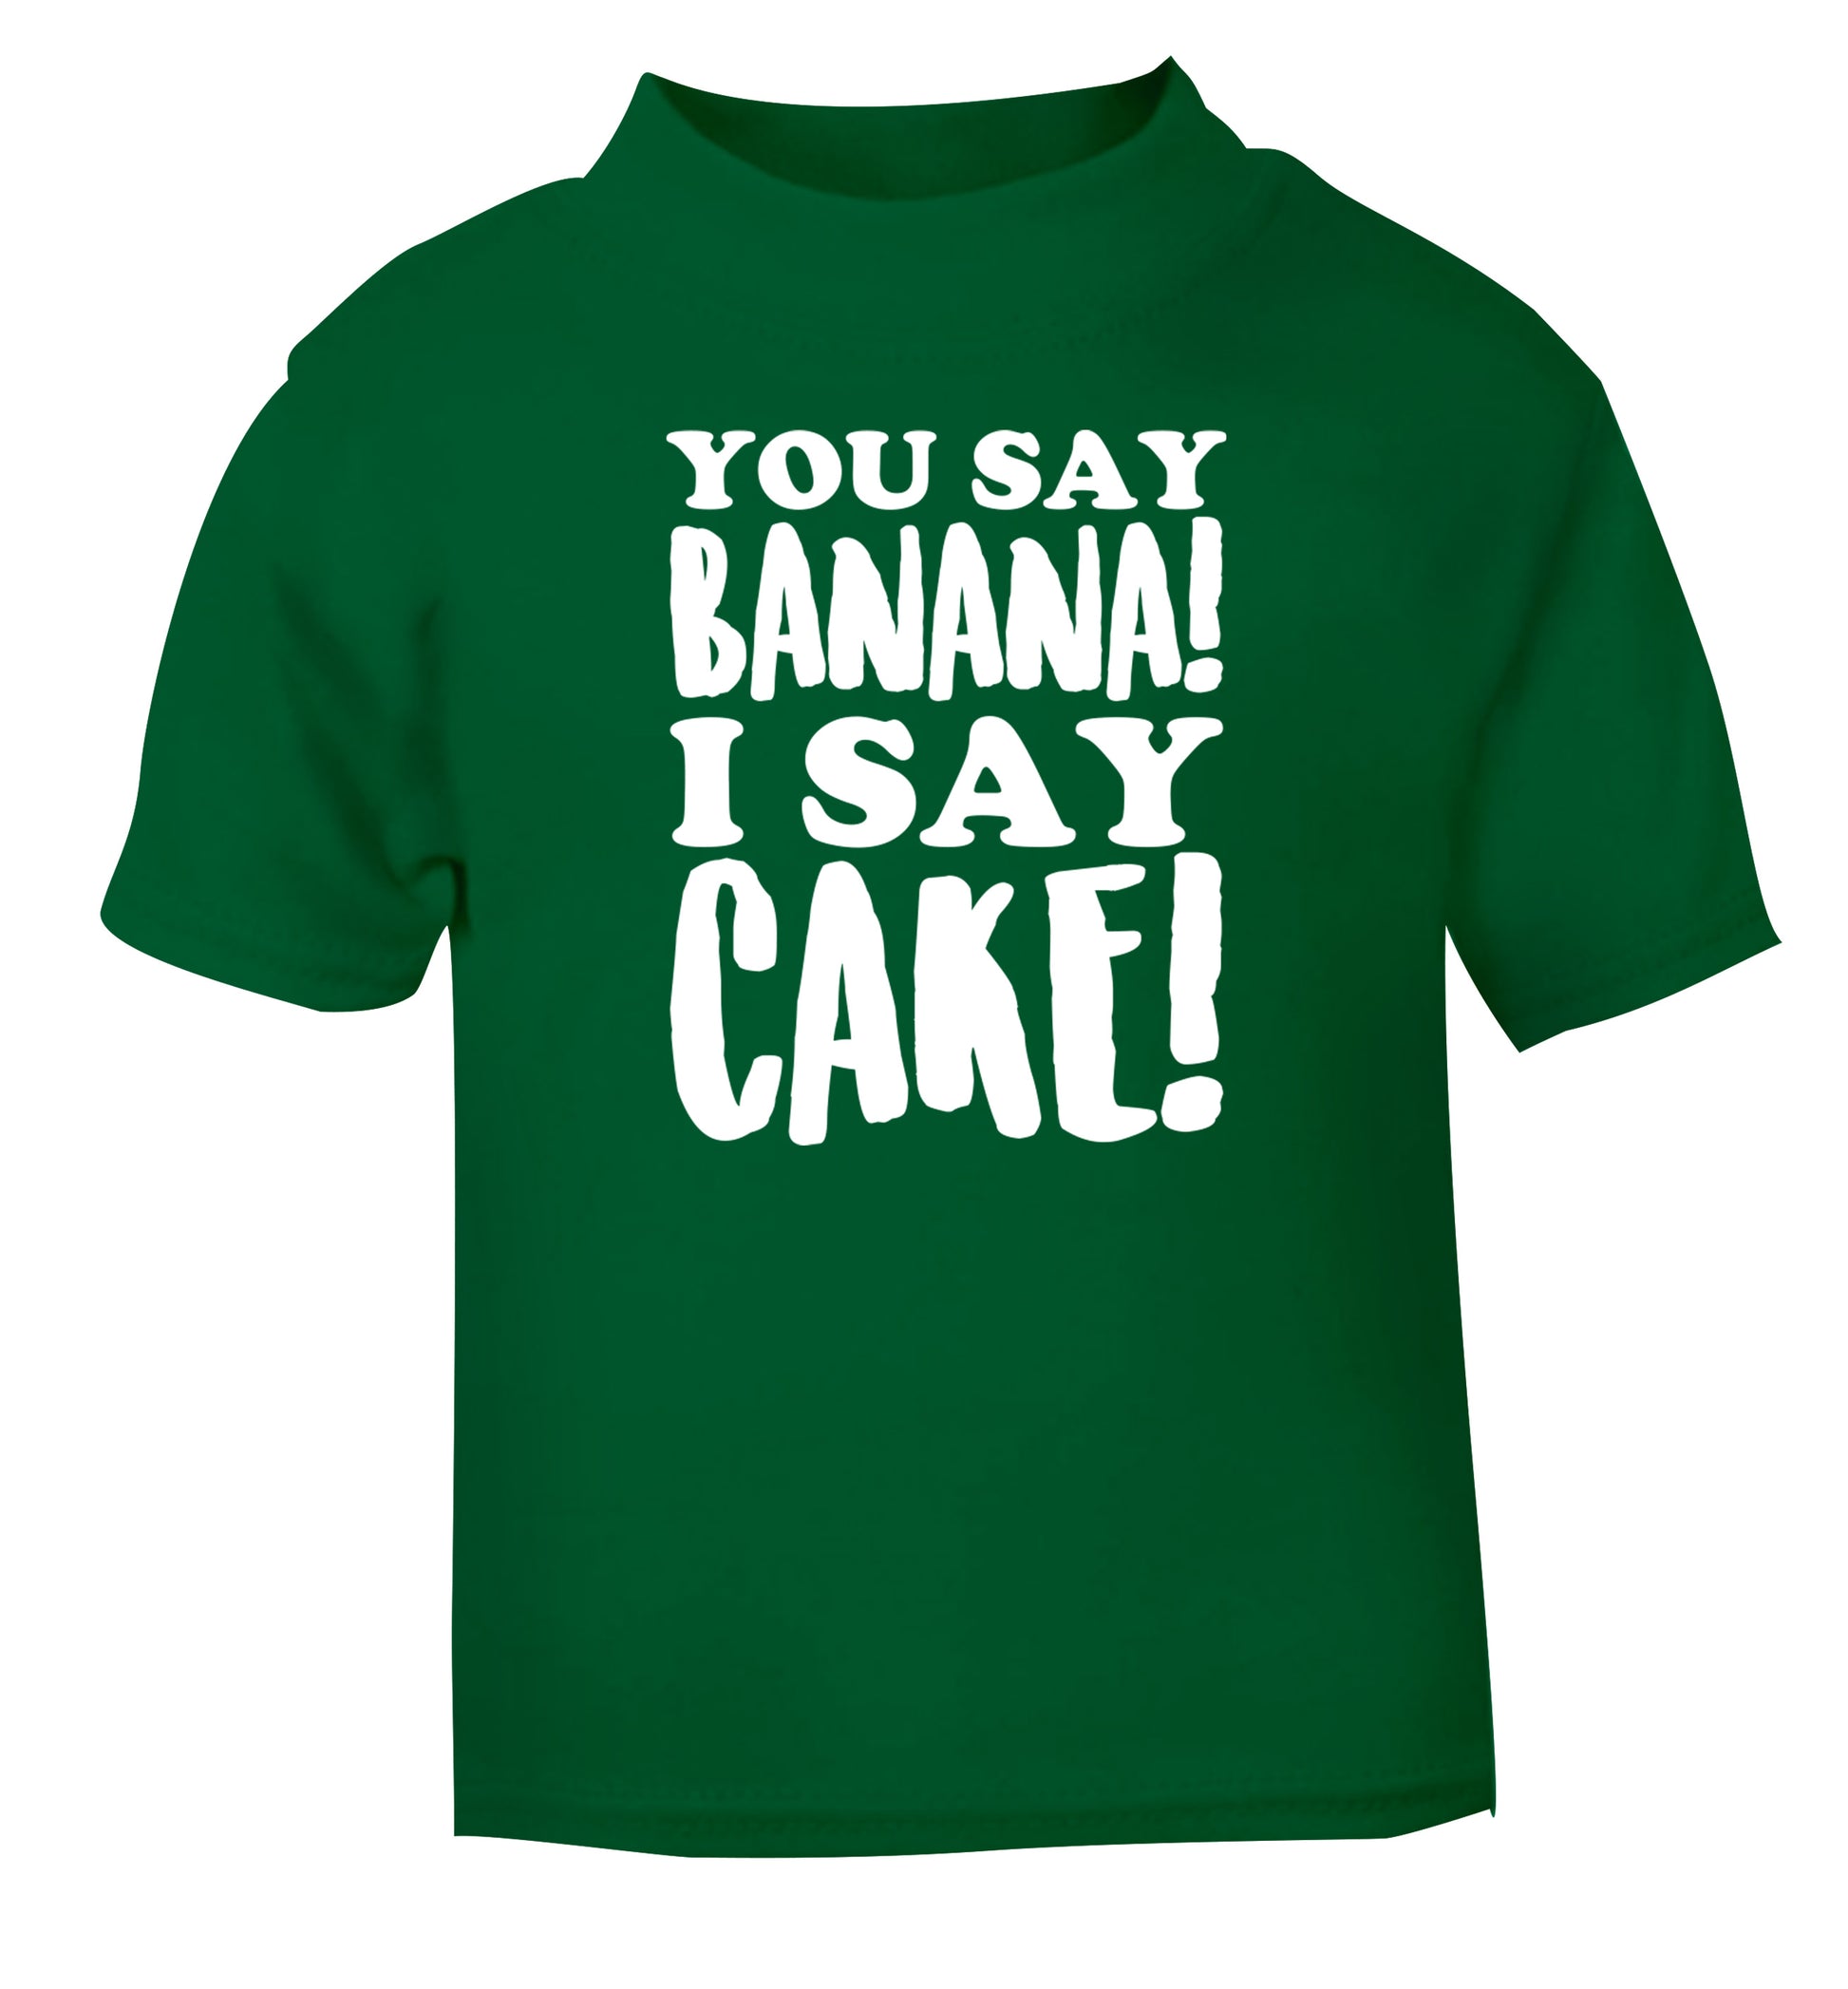 You say banana I say cake! green Baby Toddler Tshirt 2 Years